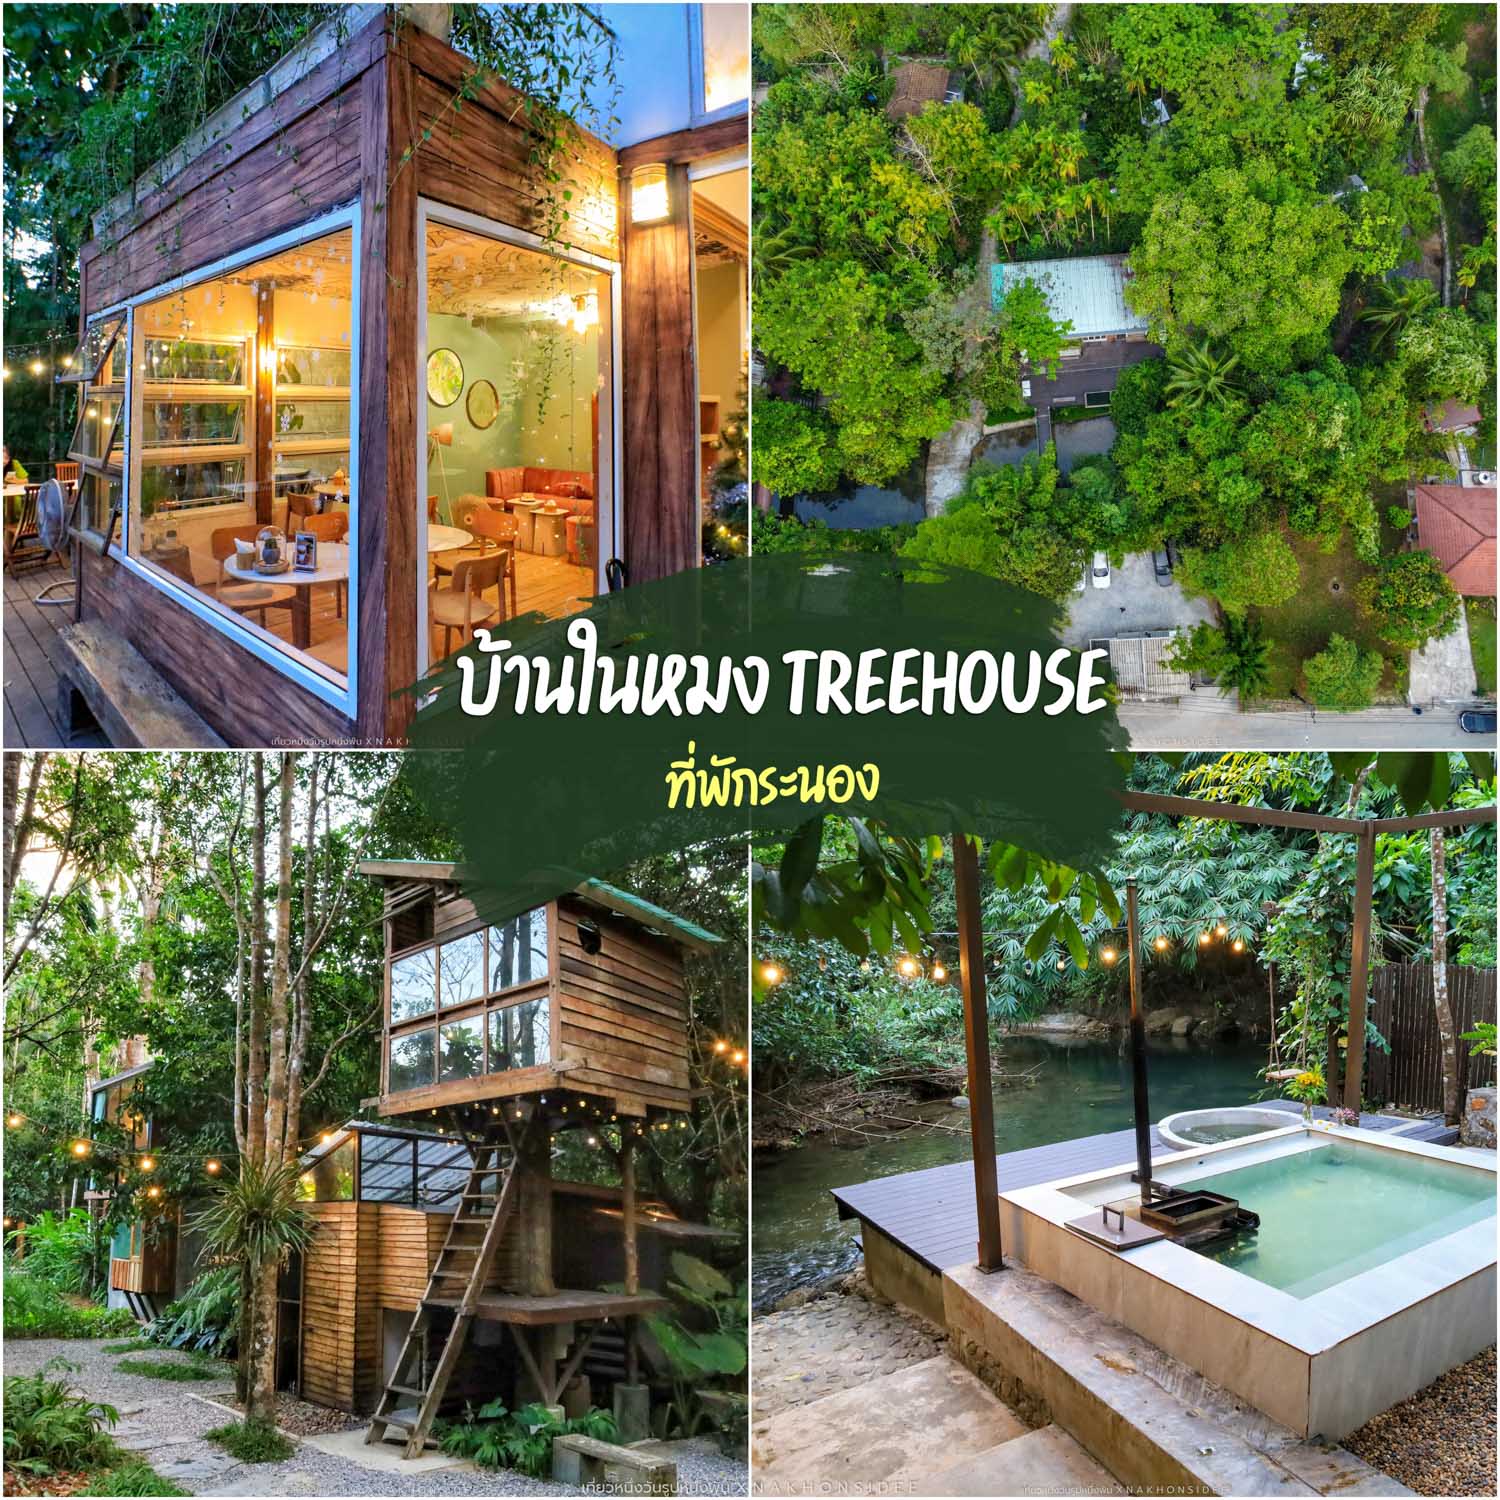 บ้านในหมง treehouse  ที่พักระนอง บ้านต้นไม้กลางป่าริมลำธาร  โฮมสเตย์ริมลำธาร ที่ซ่อนตัวท่ามกลางต้นไม้เขียวๆ ร่มรื่น และบรรยากาศสดชื่นมากๆ